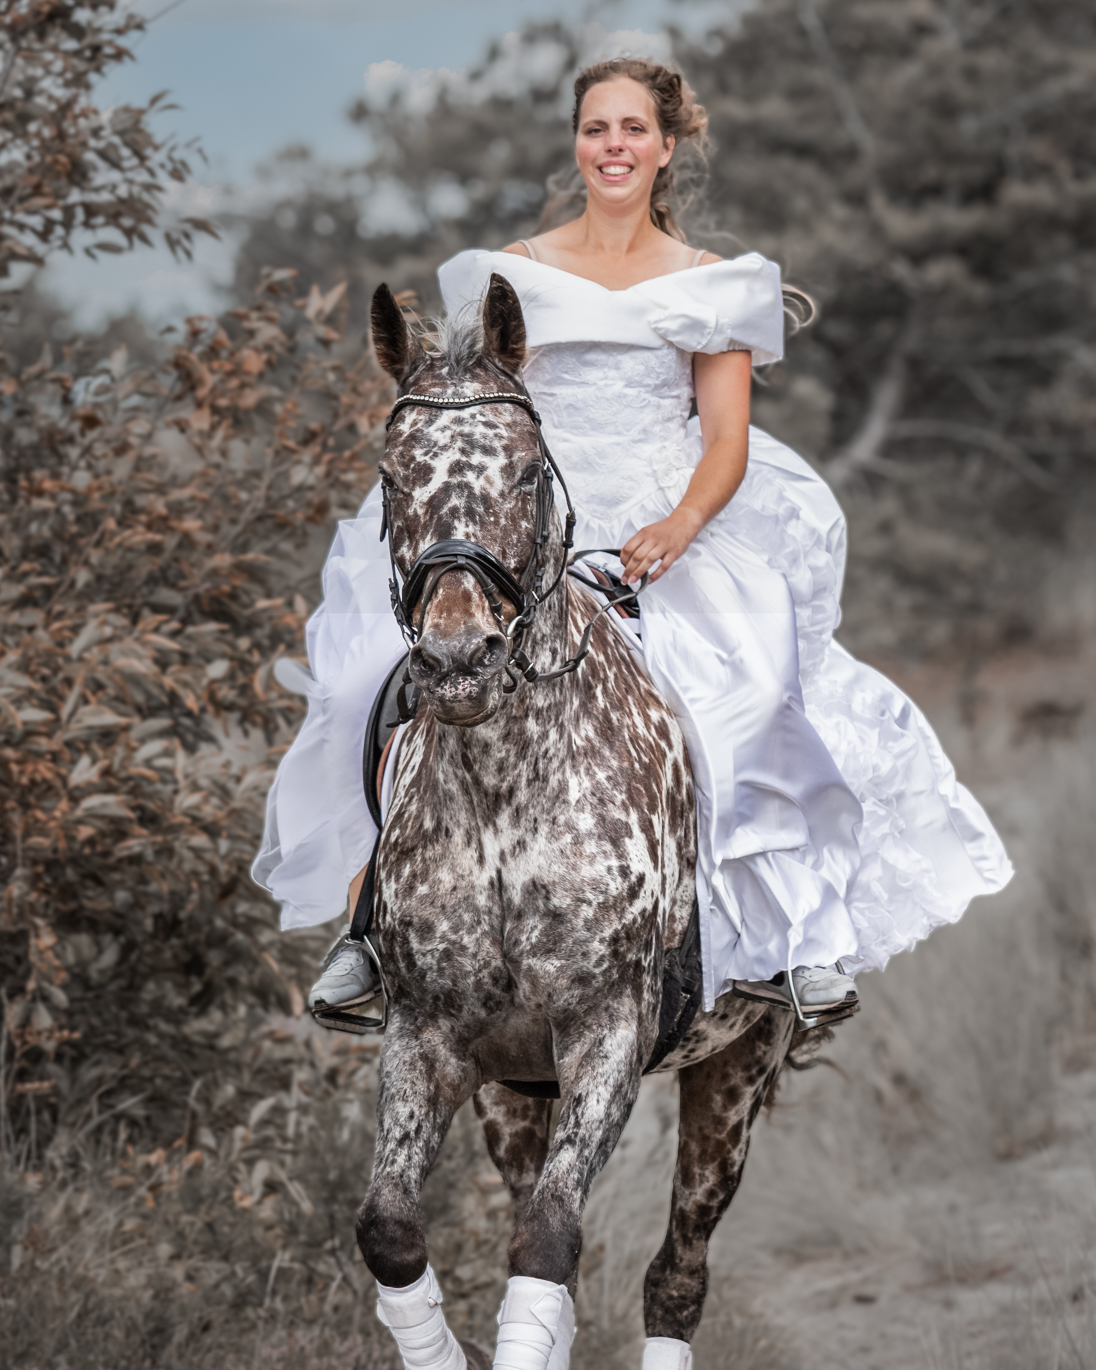 Bruid rijdend op haar paard in een trouwjurk in de duinen van Hargen aan Zee.